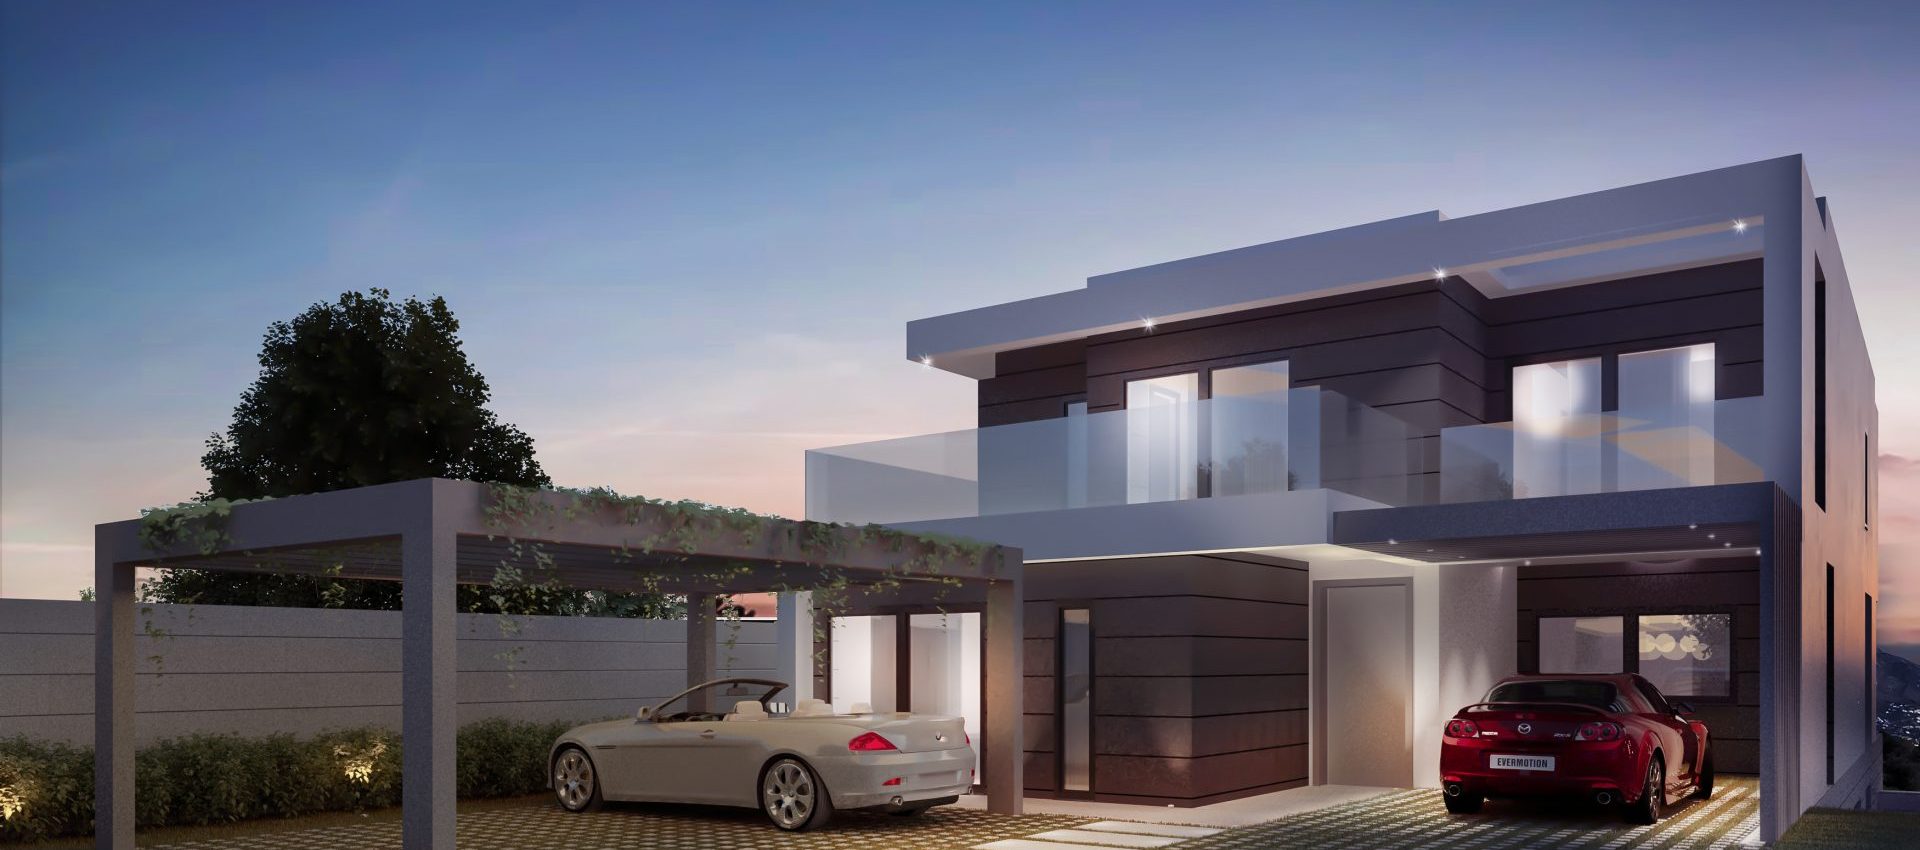 New development of luxury villas in Riviera del Sol